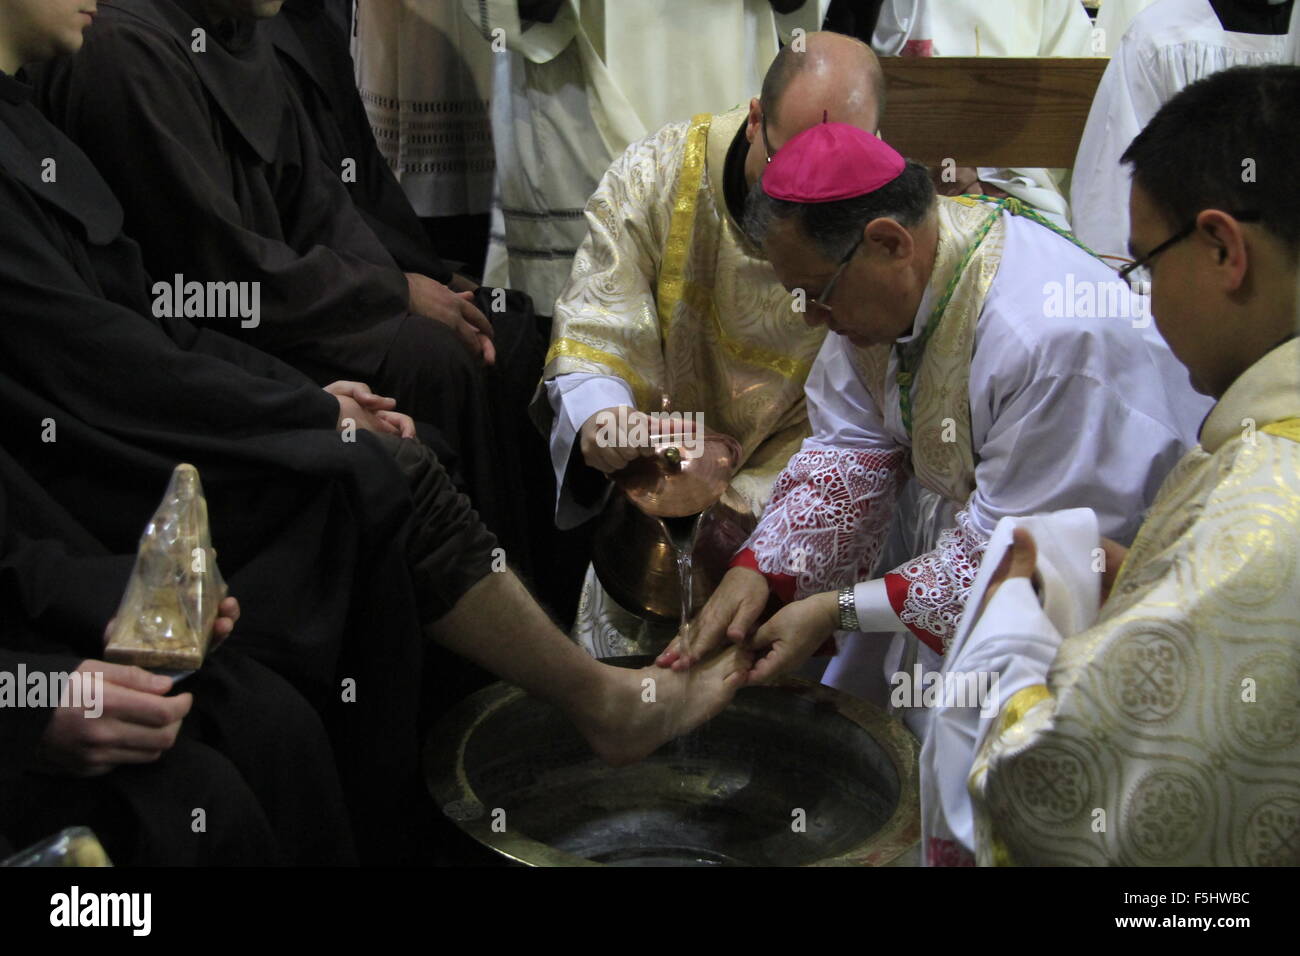 Israele, Gerusalemme, Pasqua, il lavaggio dei piedi cerimonia dal Patriarca Latino di Gerusalemme Fouad Twal presso la chiesa del Santo Sepolcro il Giovedì Santo Foto Stock